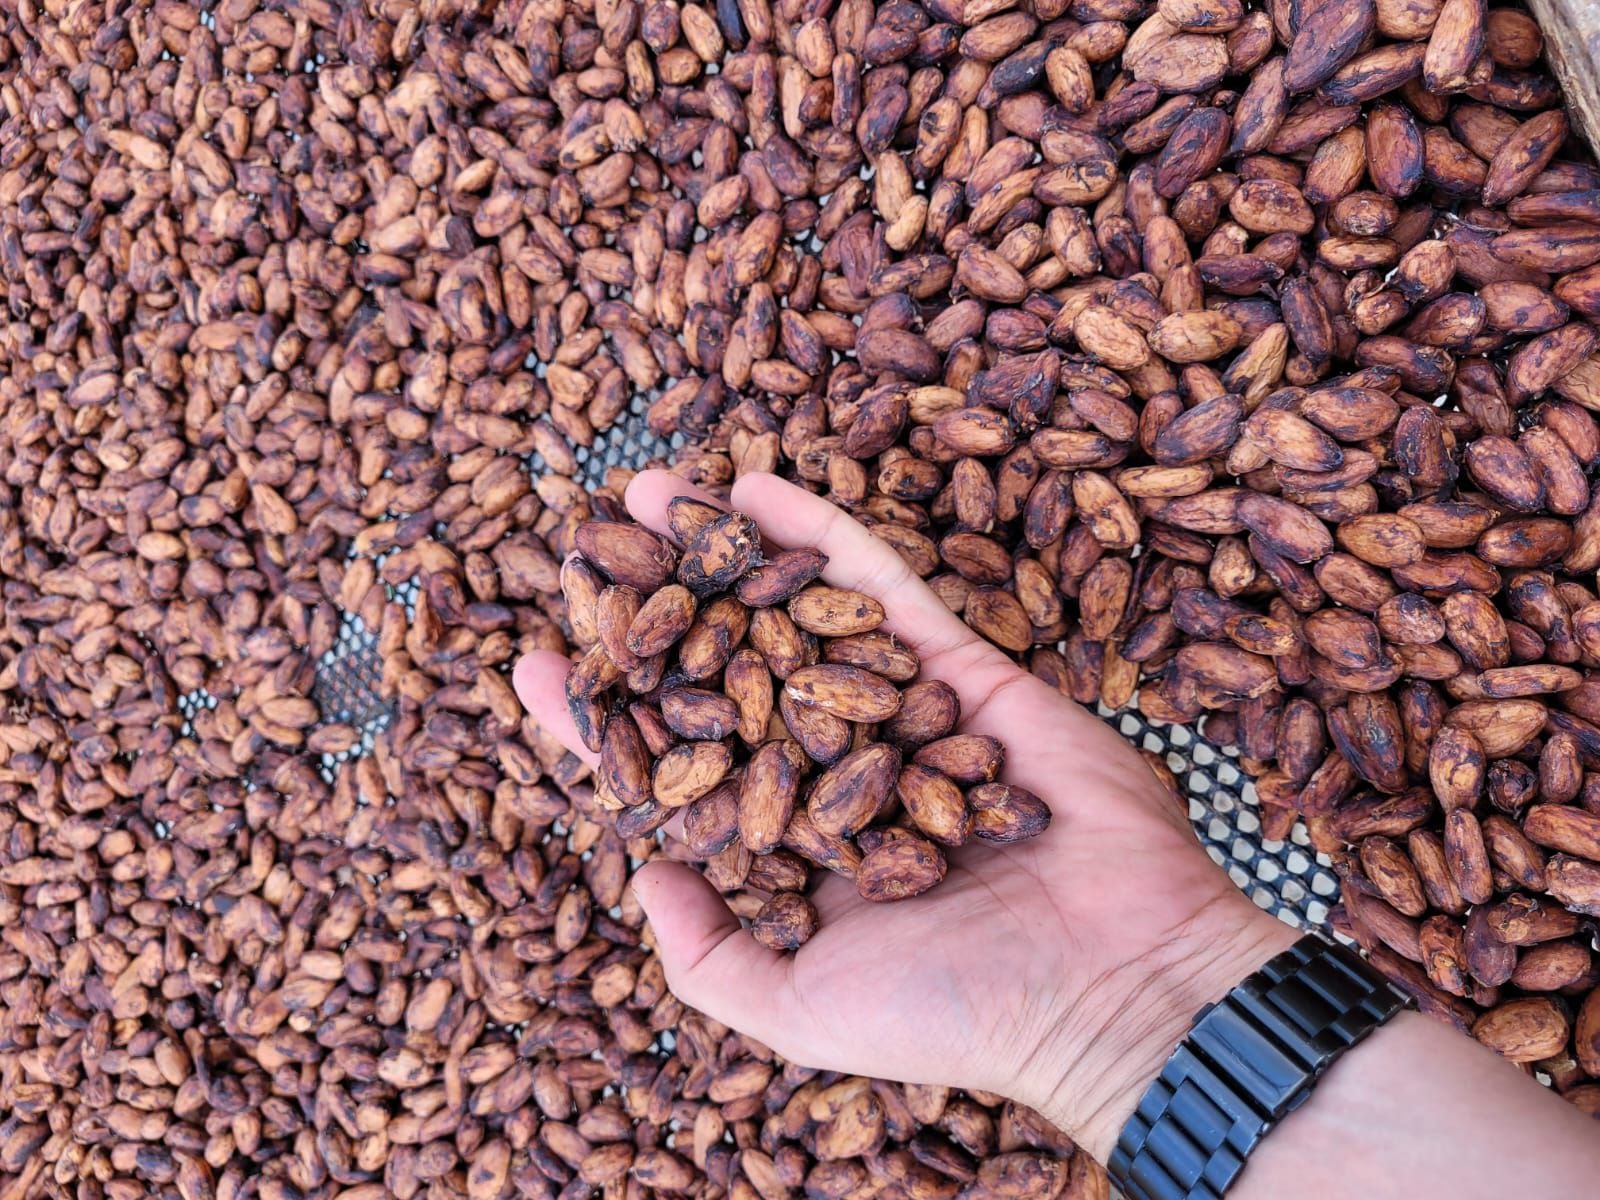 Muchos productores ticos comercializan la semilla del cacao. En Costa Rica, algunos restaurantes han comenzado a experimentar con el producto y a descubrir sus bondades.